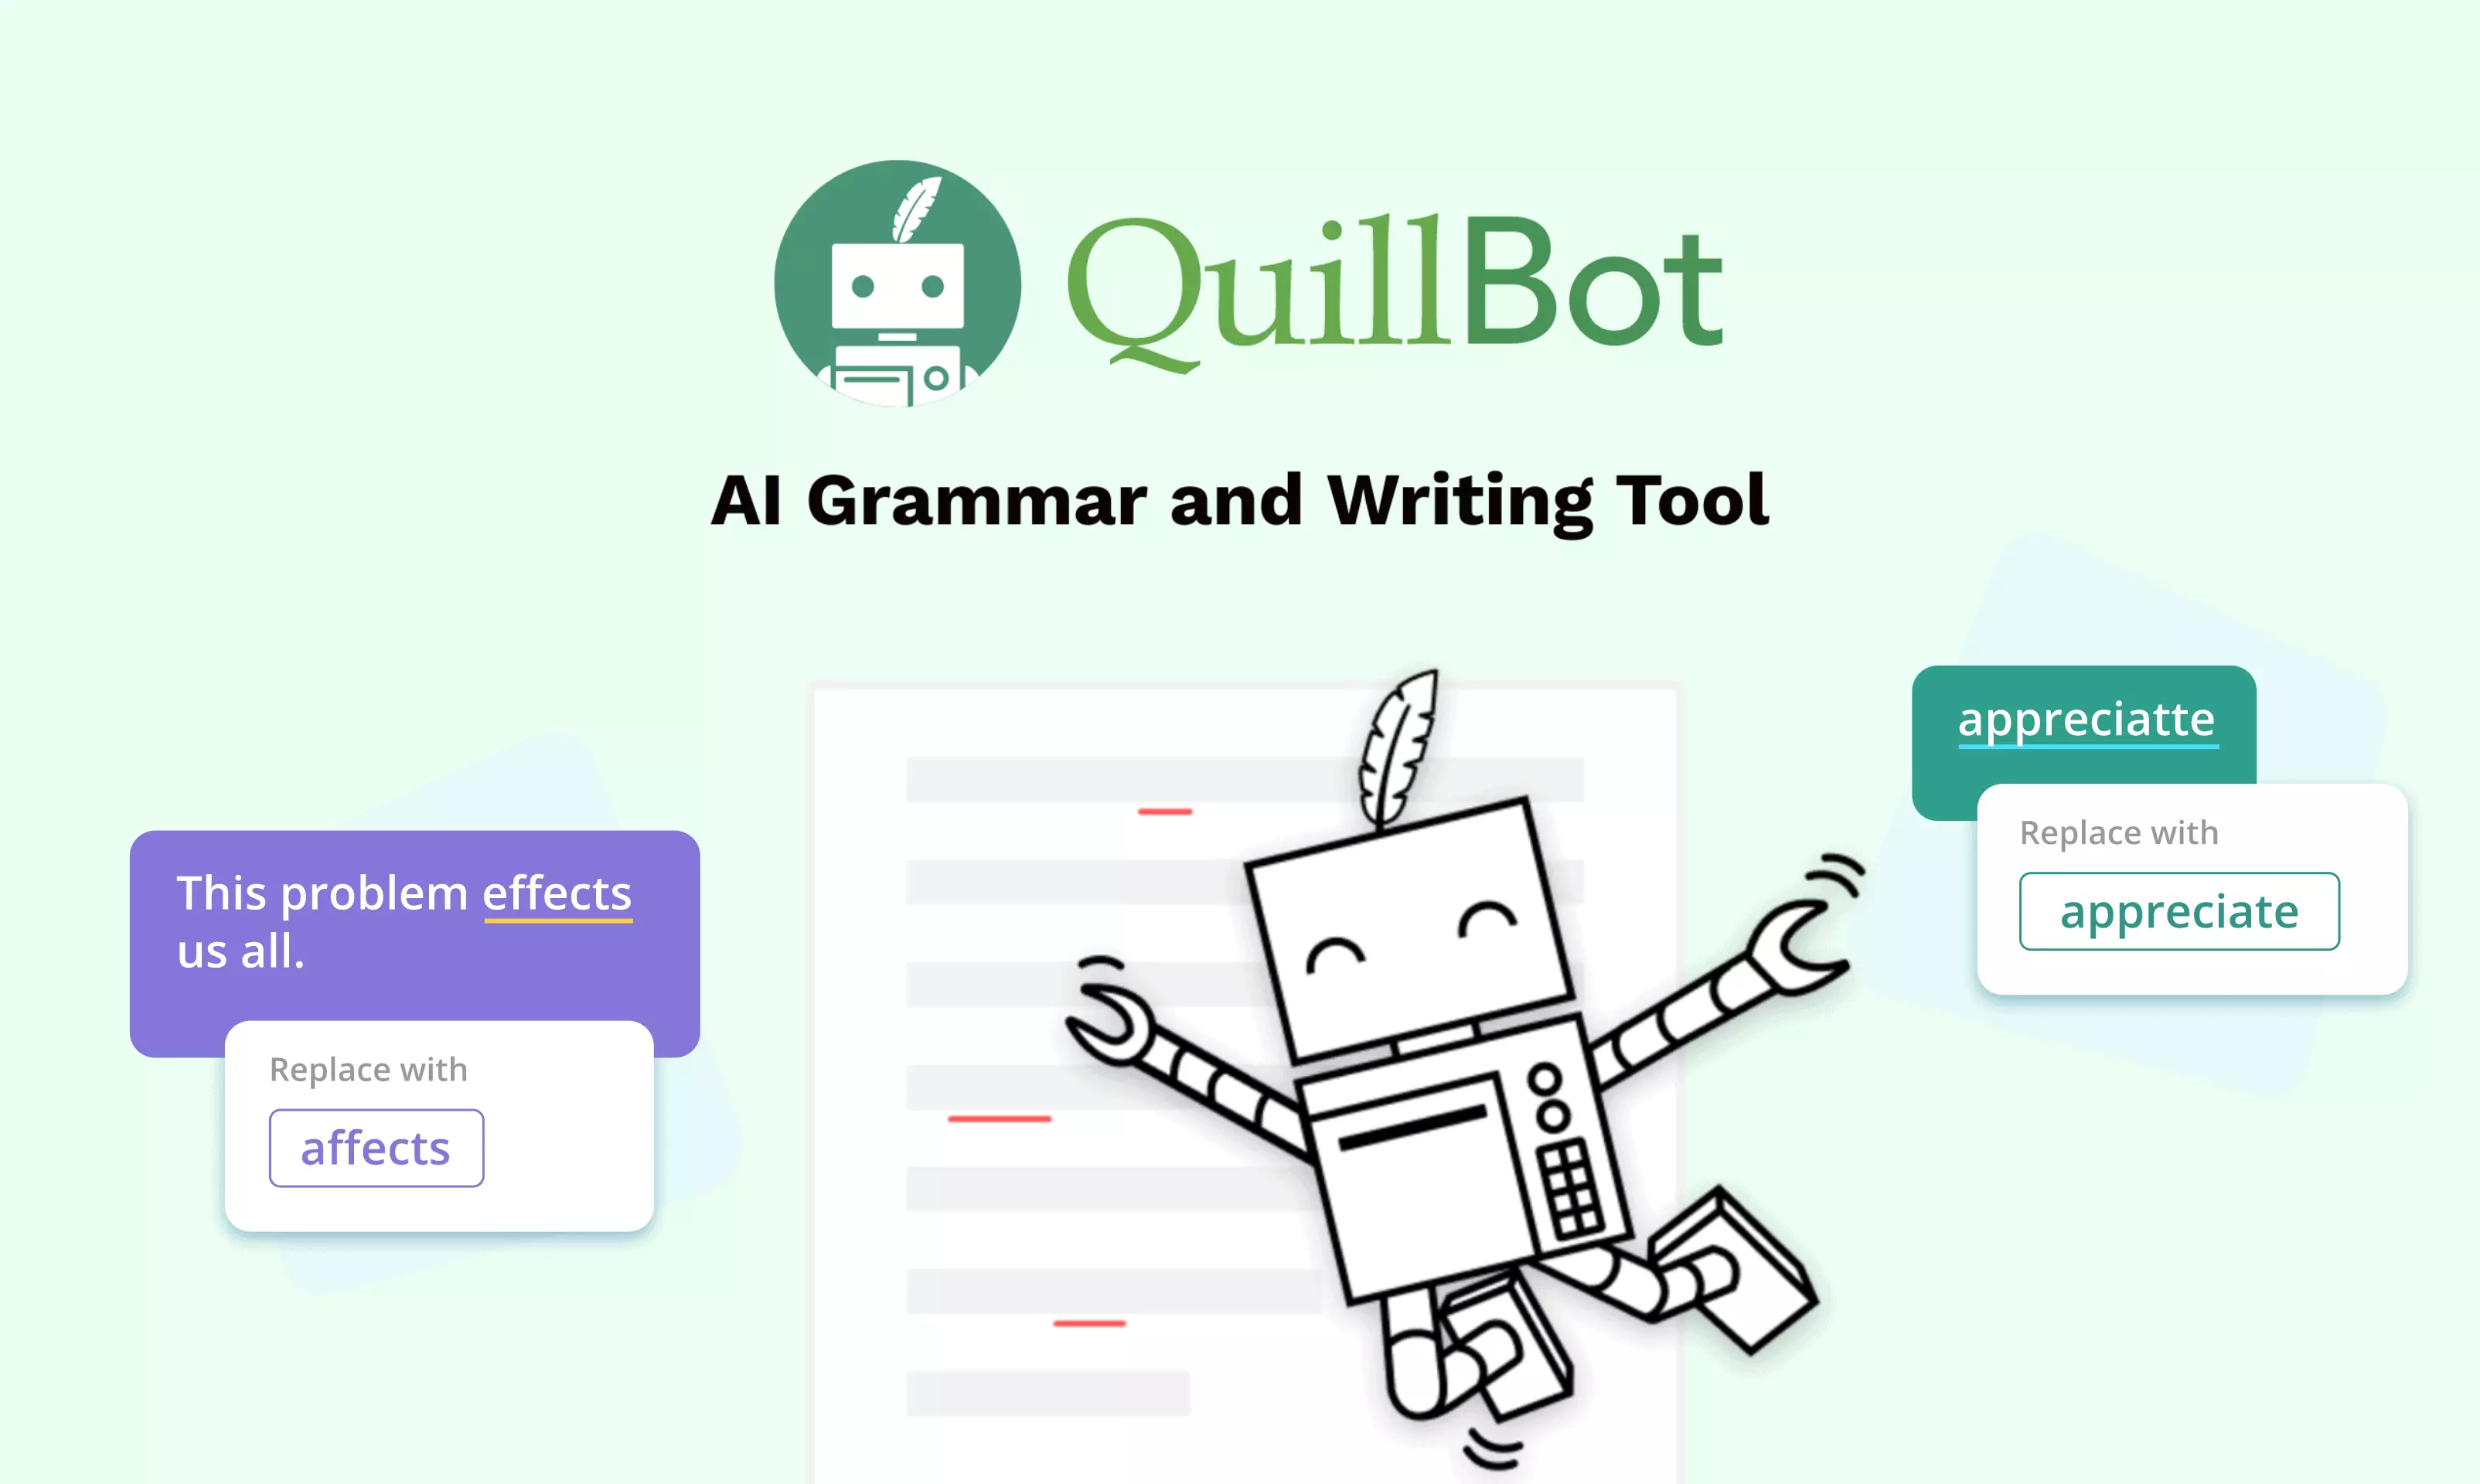 Quillbot Vs Grammarly